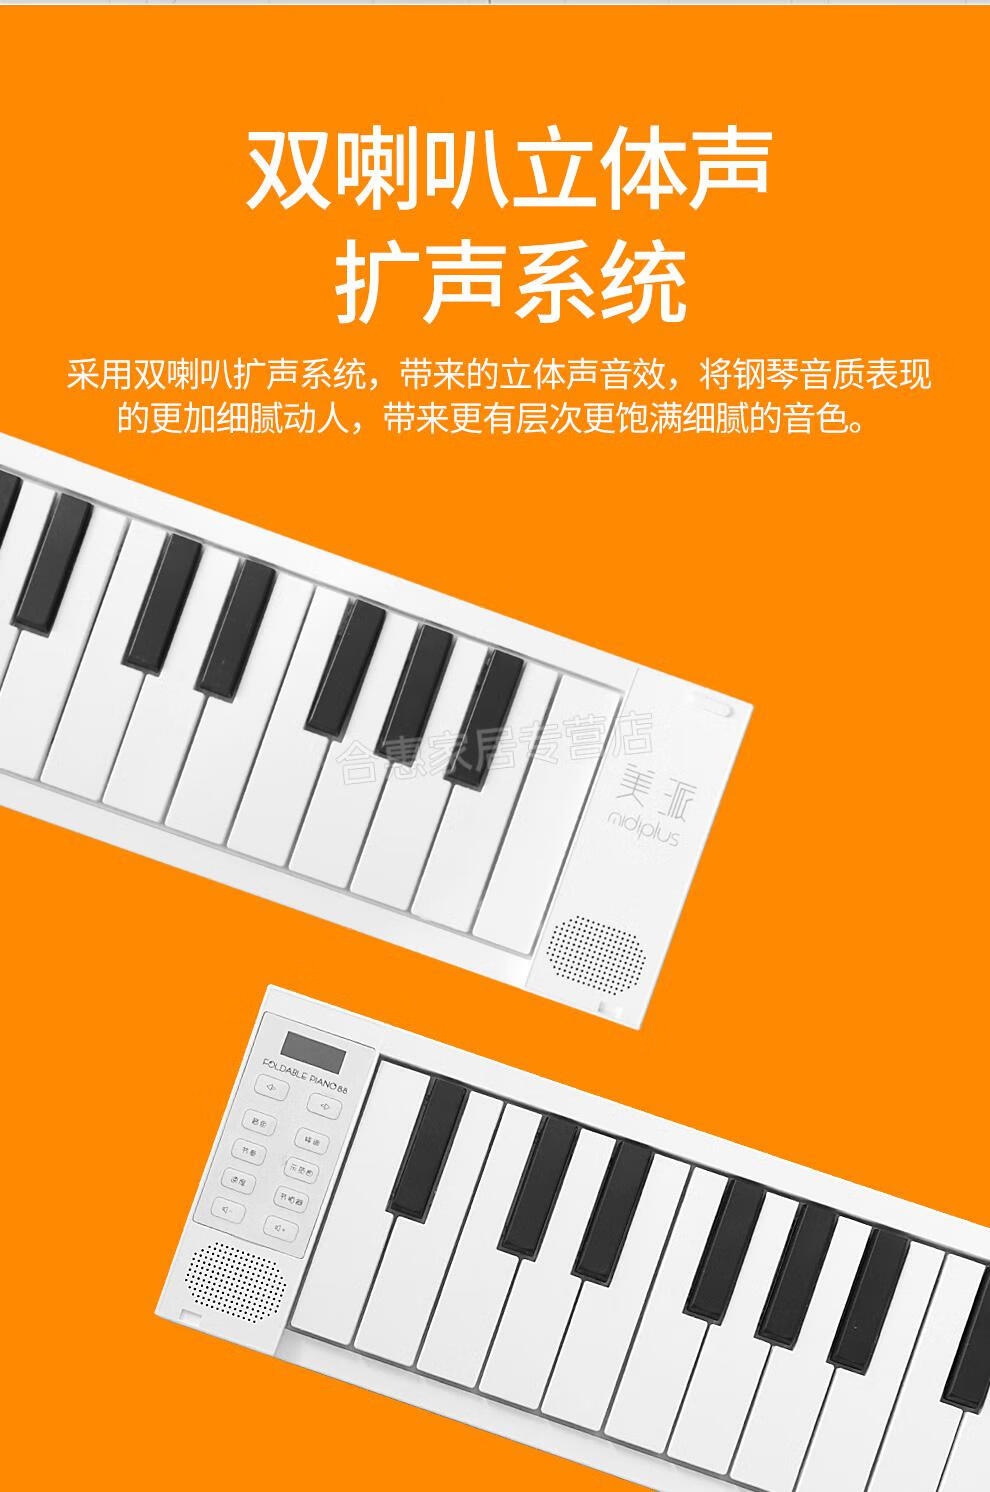 手卷琴49键盘图解图片